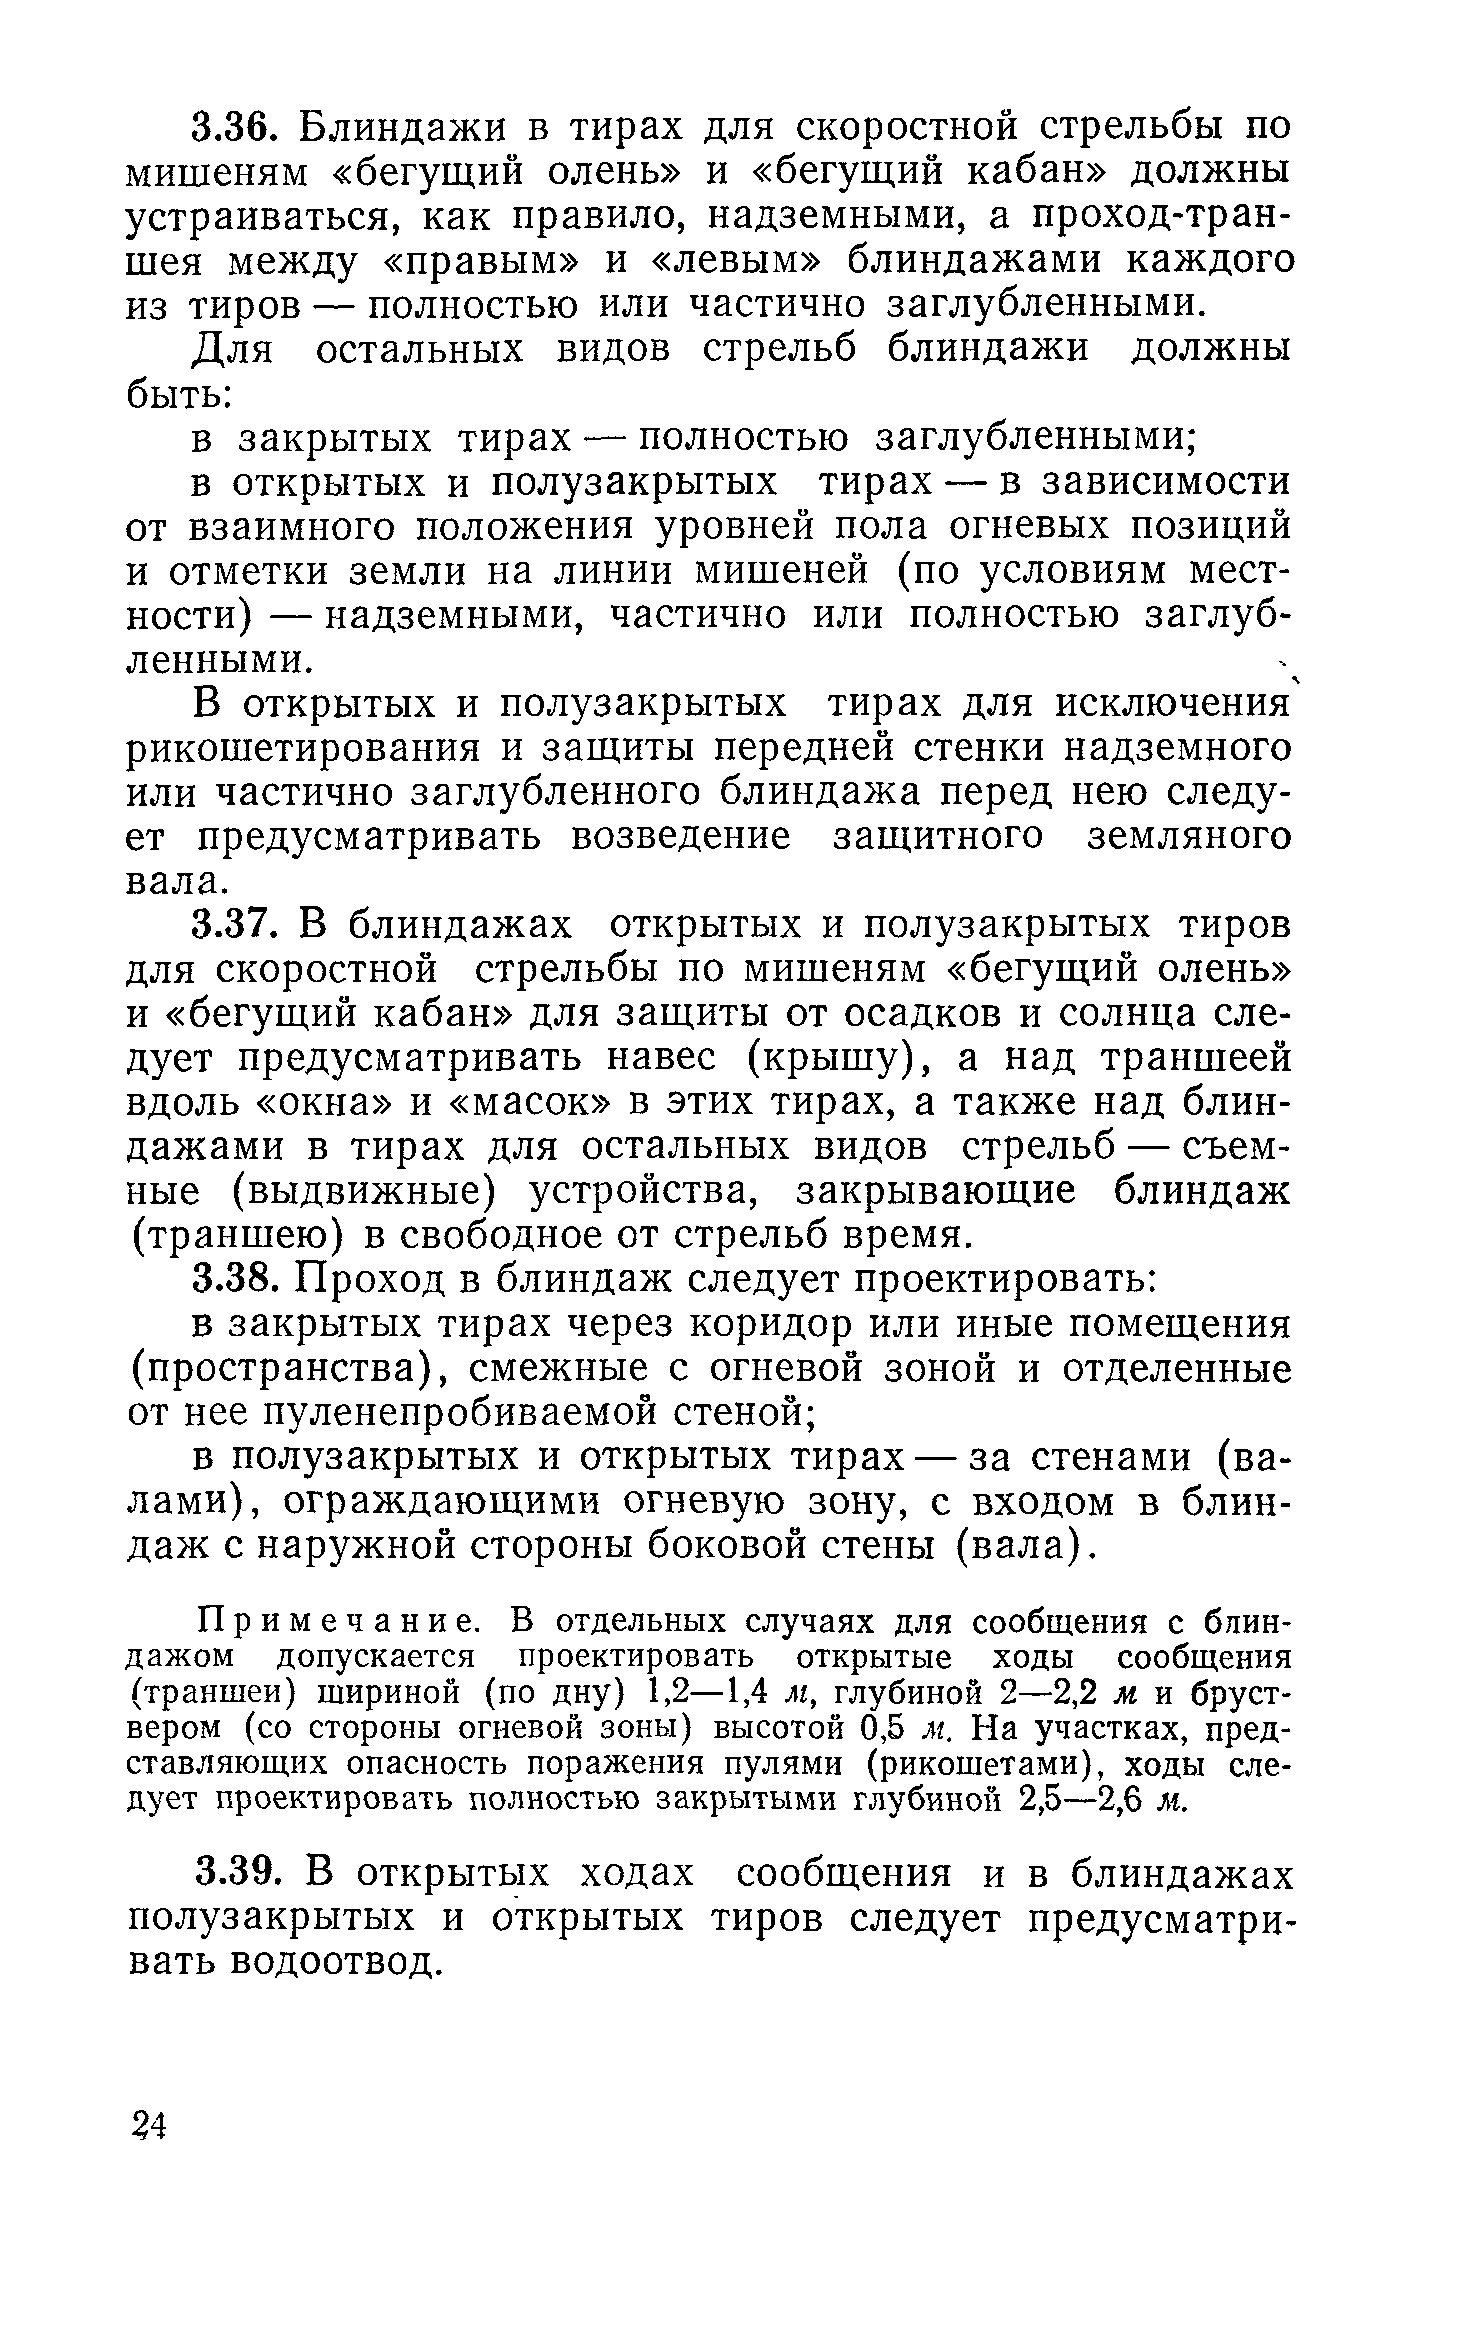 ВСН 6-71/Госгражданстрой